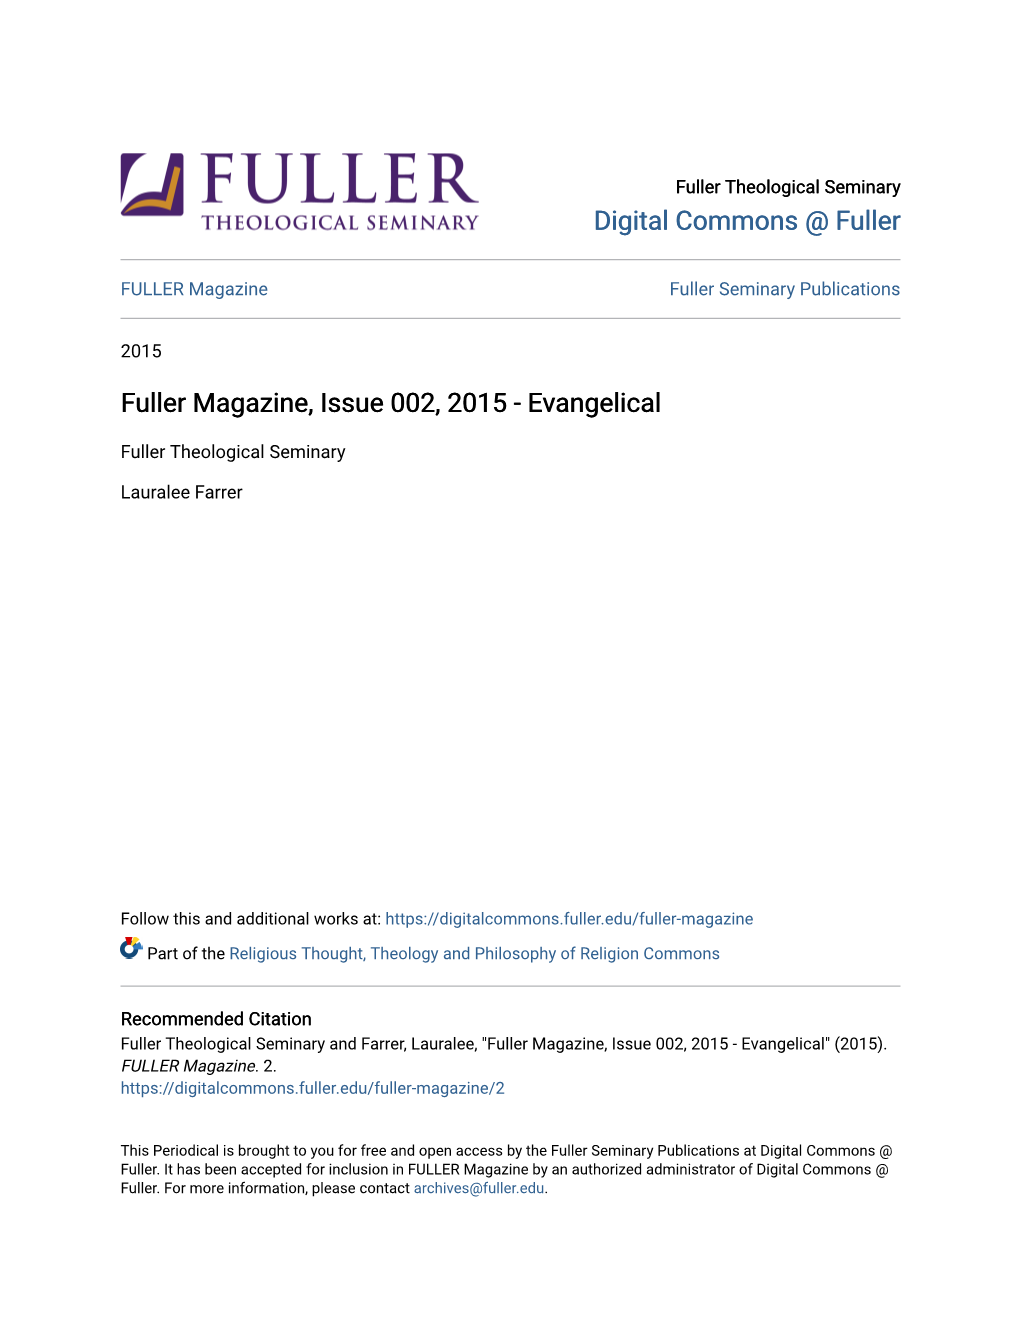 Fuller Magazine, Issue 002, 2015 - Evangelical